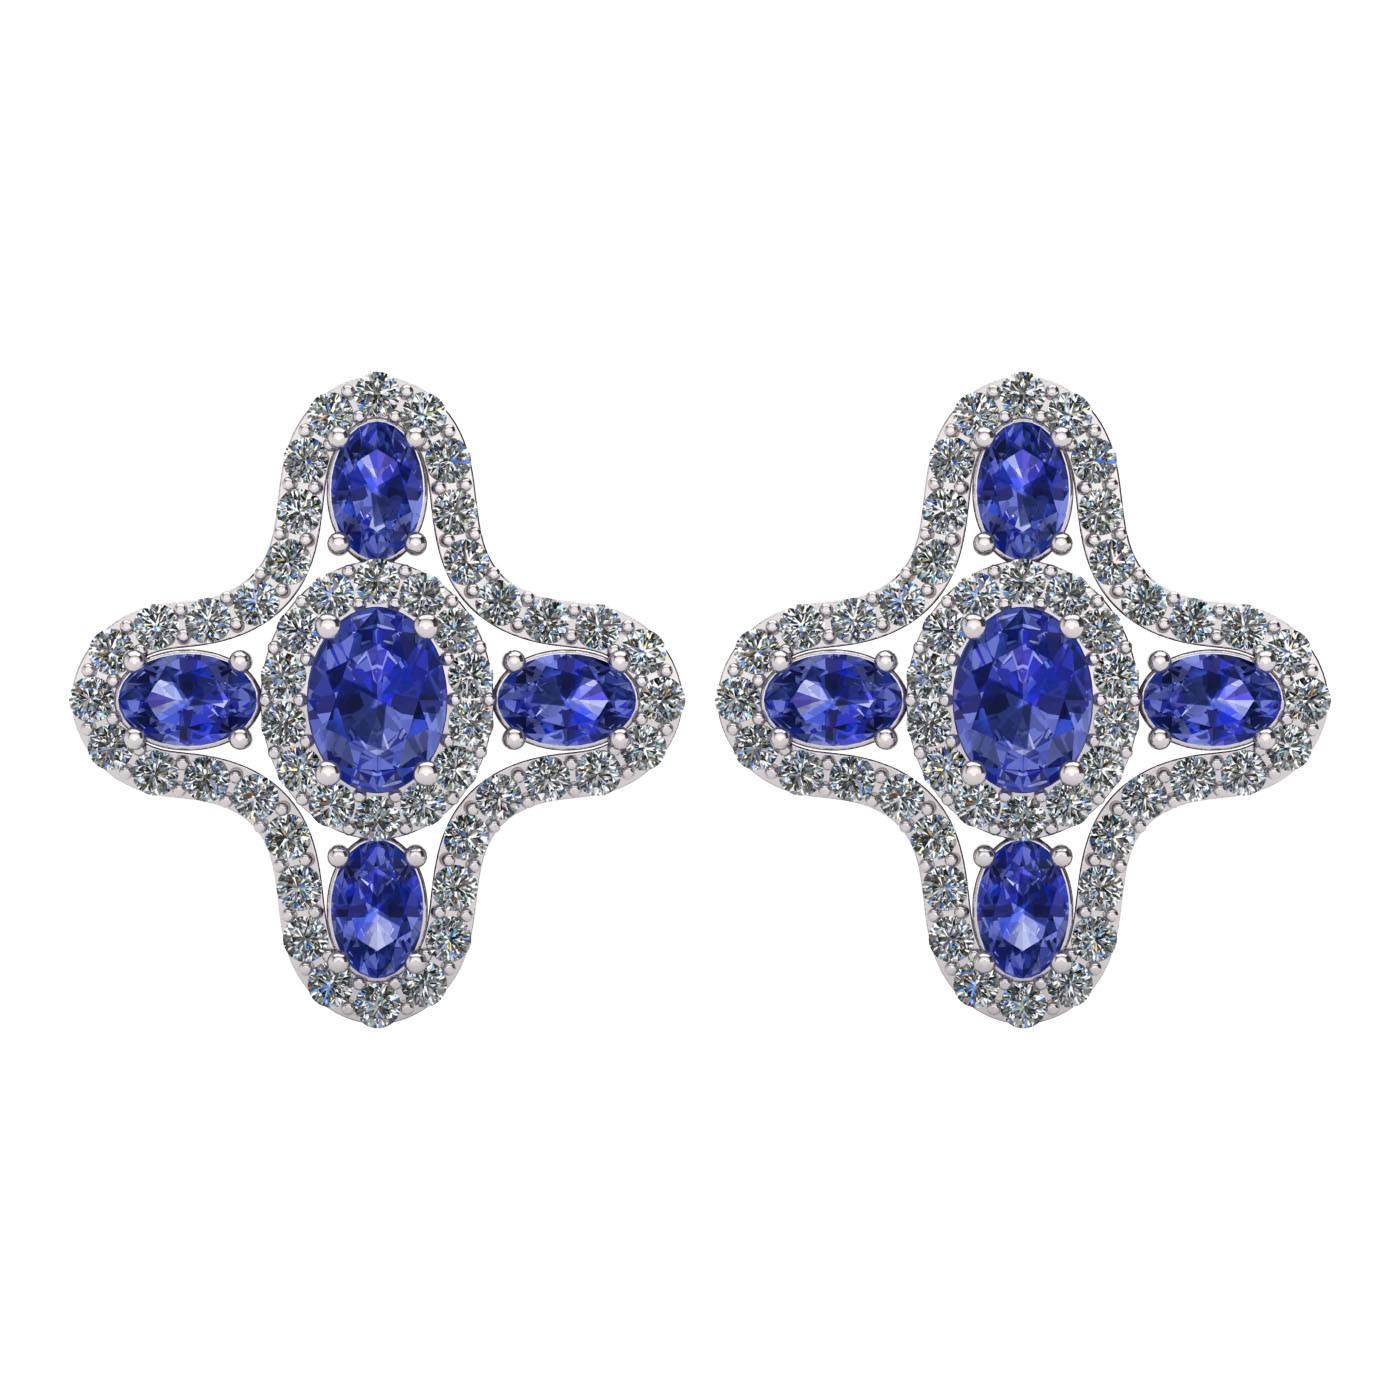  Tanzanite Diamond Halo Stud Earrings by Juliette Wooten White Gold  For Sale